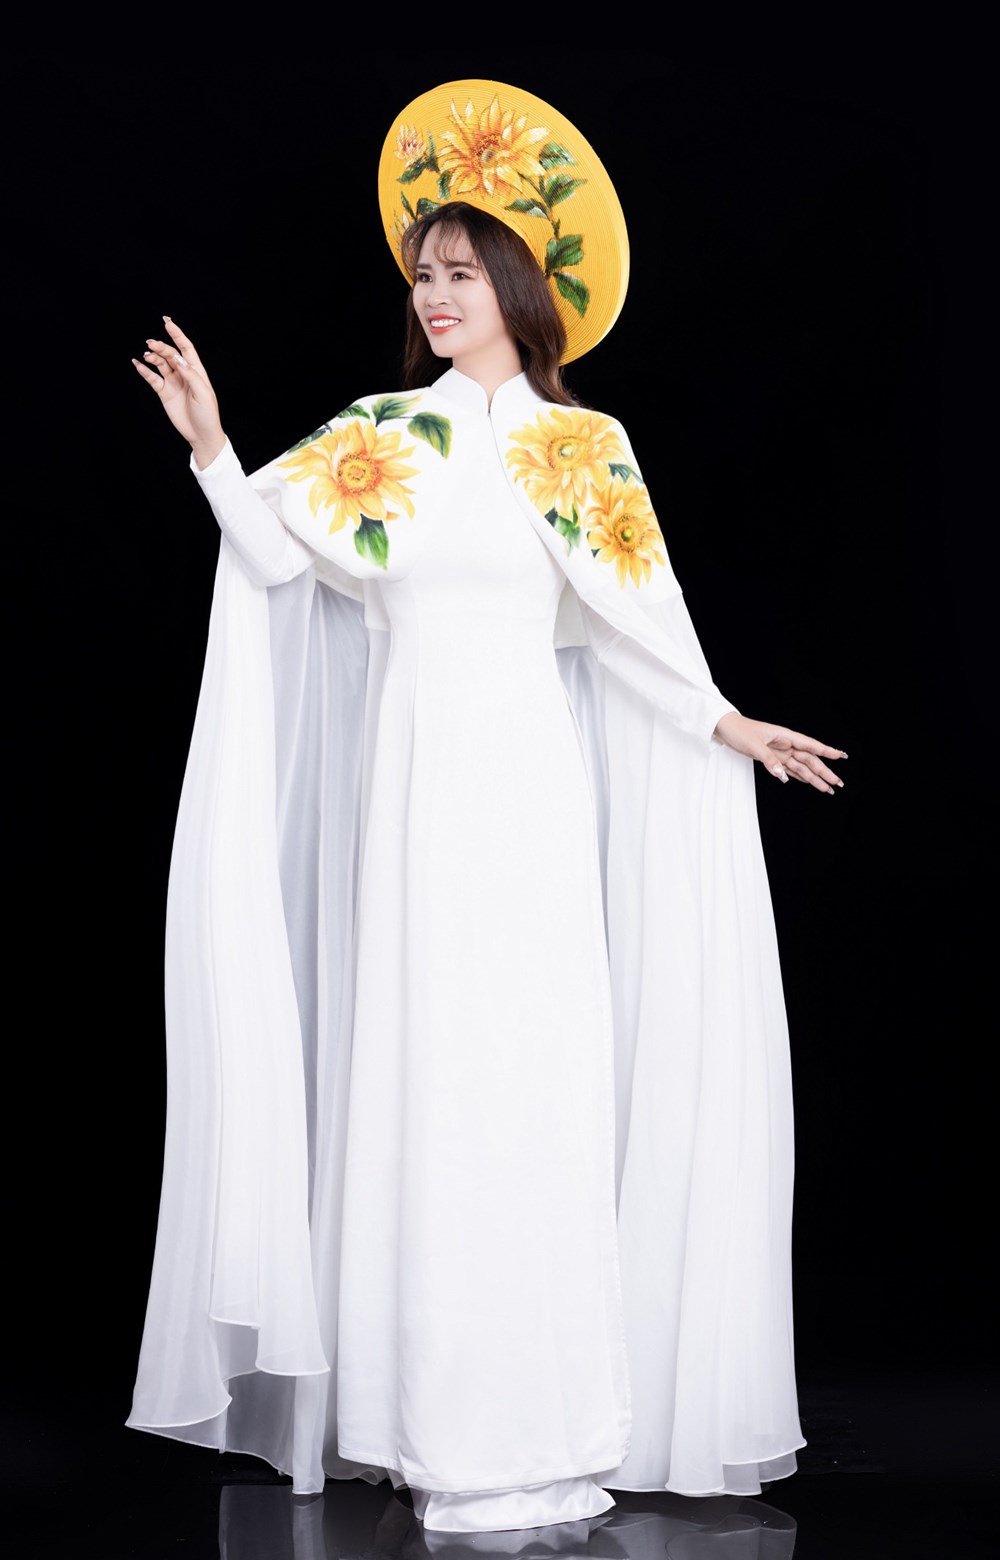 Á hậu Ngọc Thanh đẹp trang nhã với áo dài họa tiết hoa hướng dương - ảnh 6